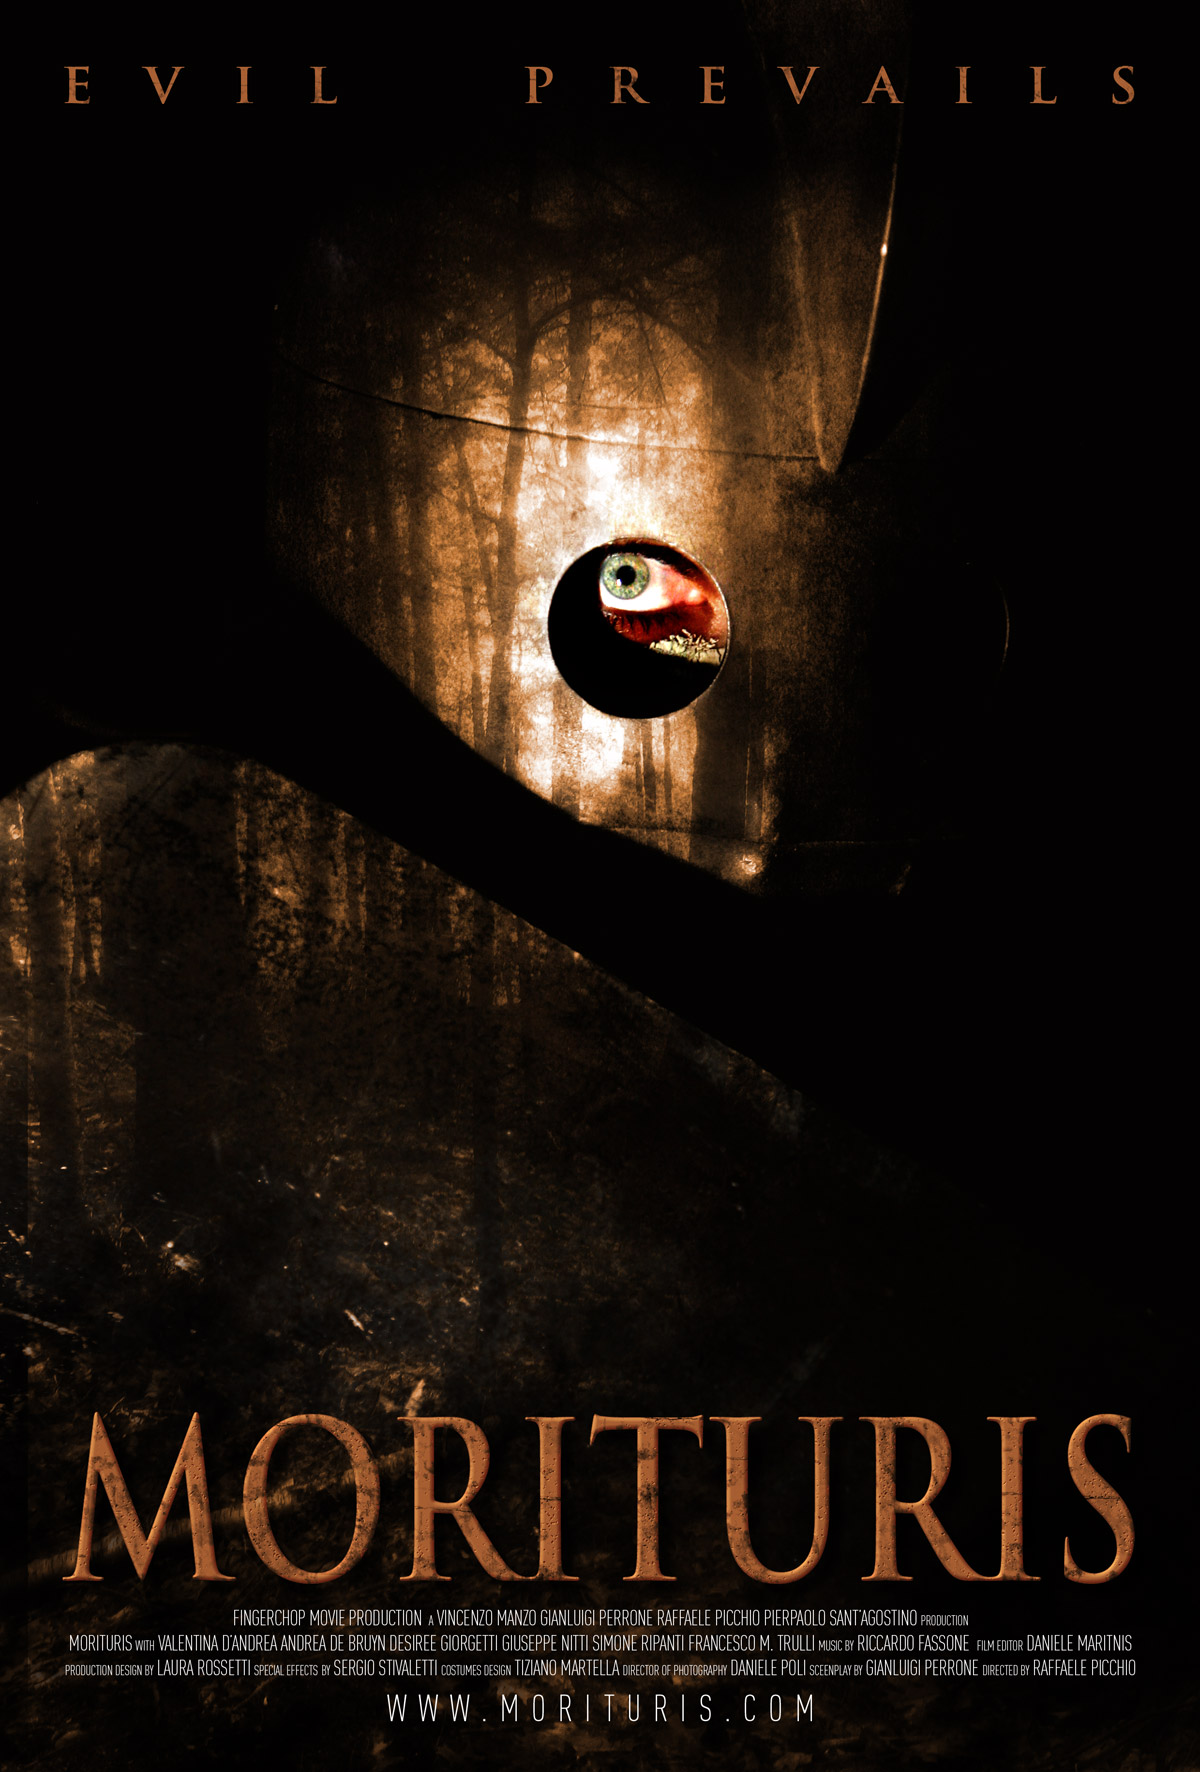 Morituris (2011)